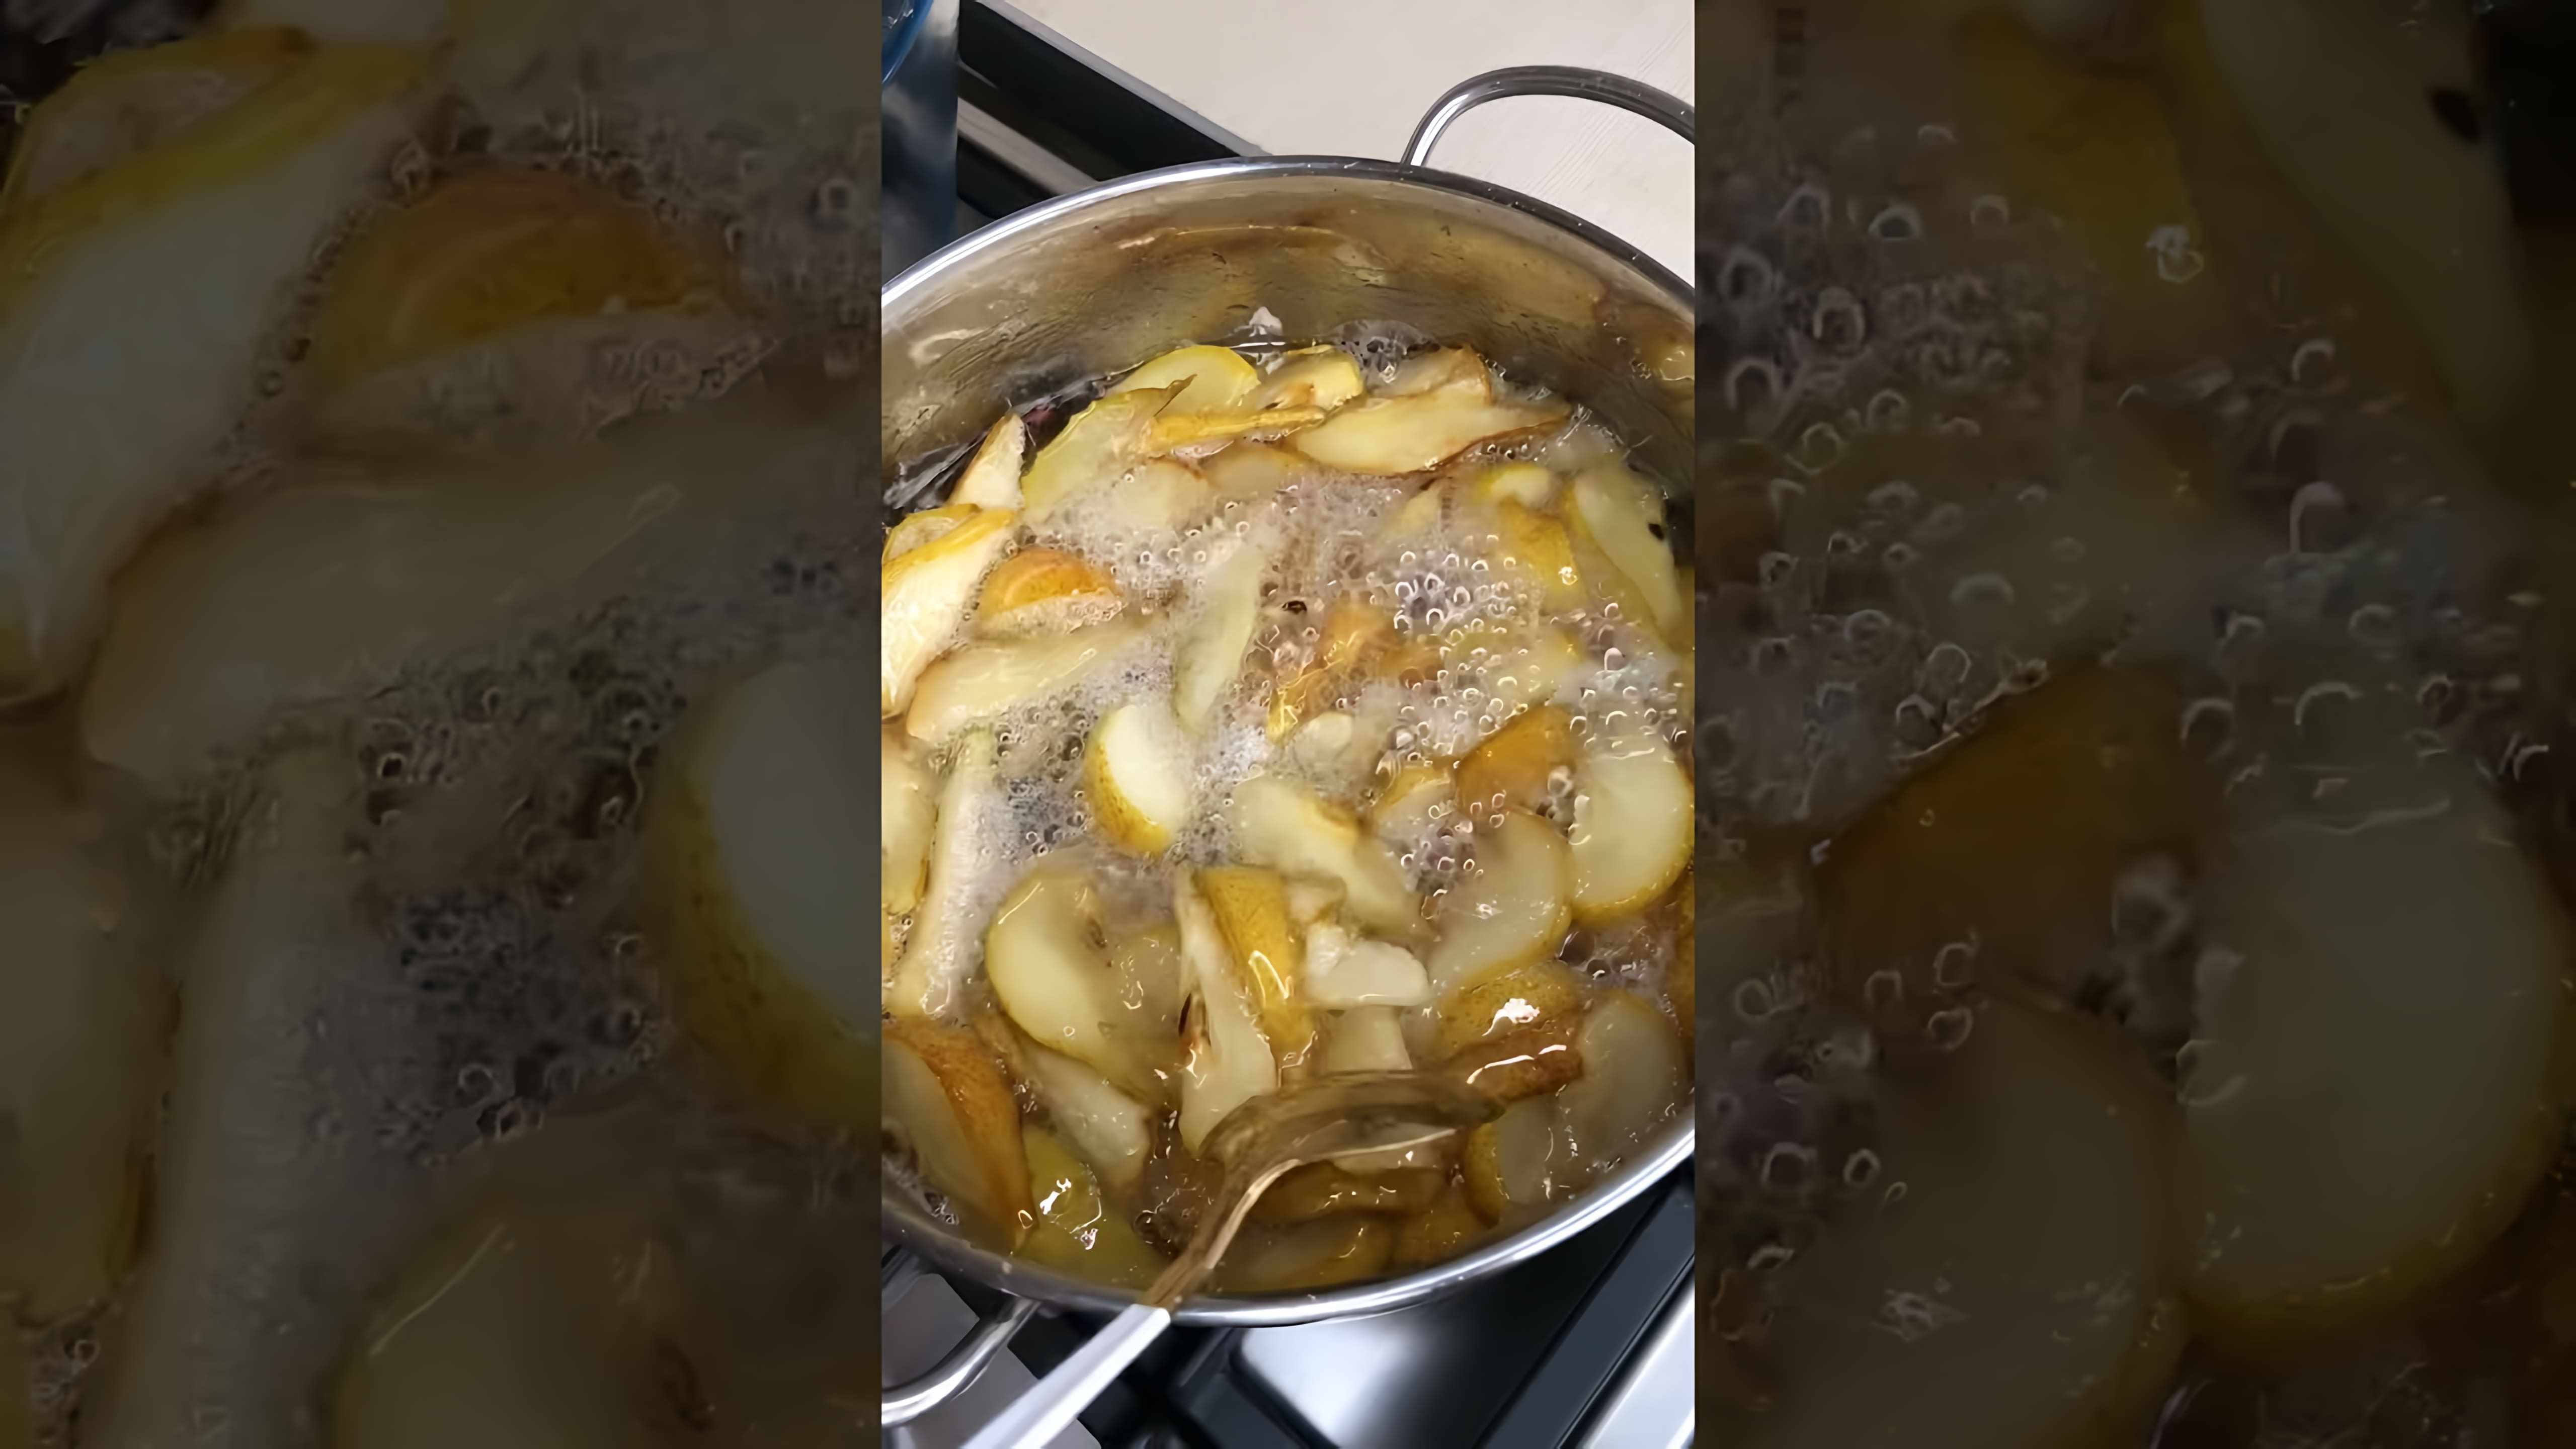 Рецепт грушевого варенья - это видео-ролик, который показывает, как приготовить вкусное и ароматное варенье из груш